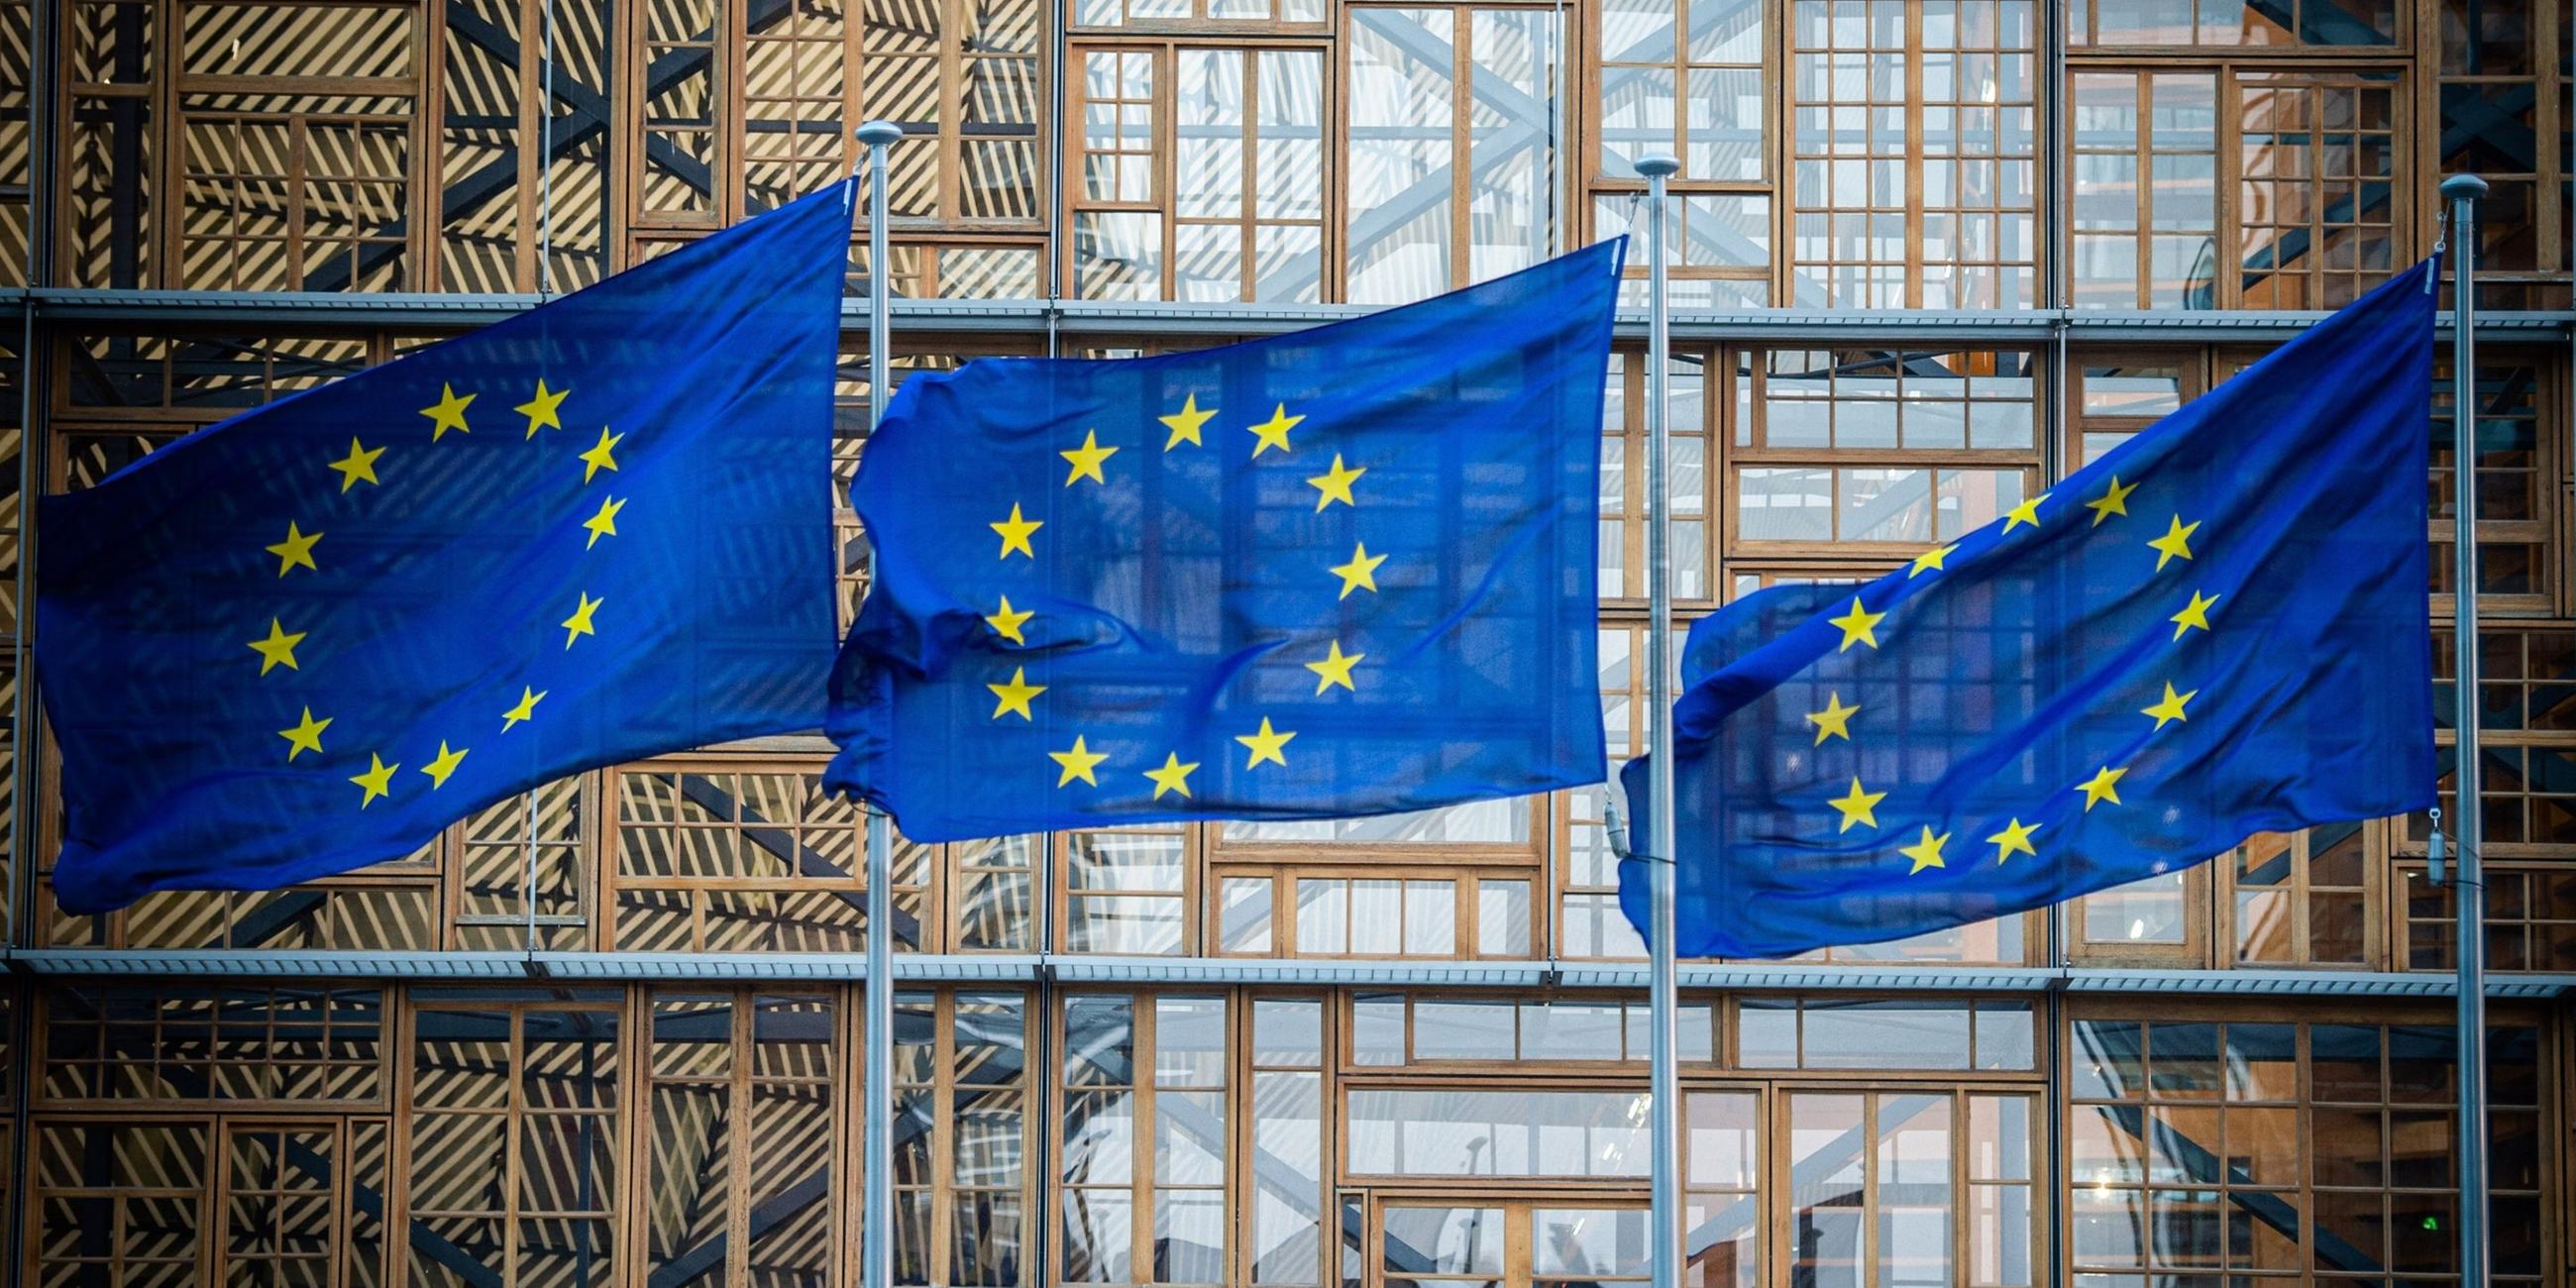 Flaggen der Europäischen Union in Brüssel.